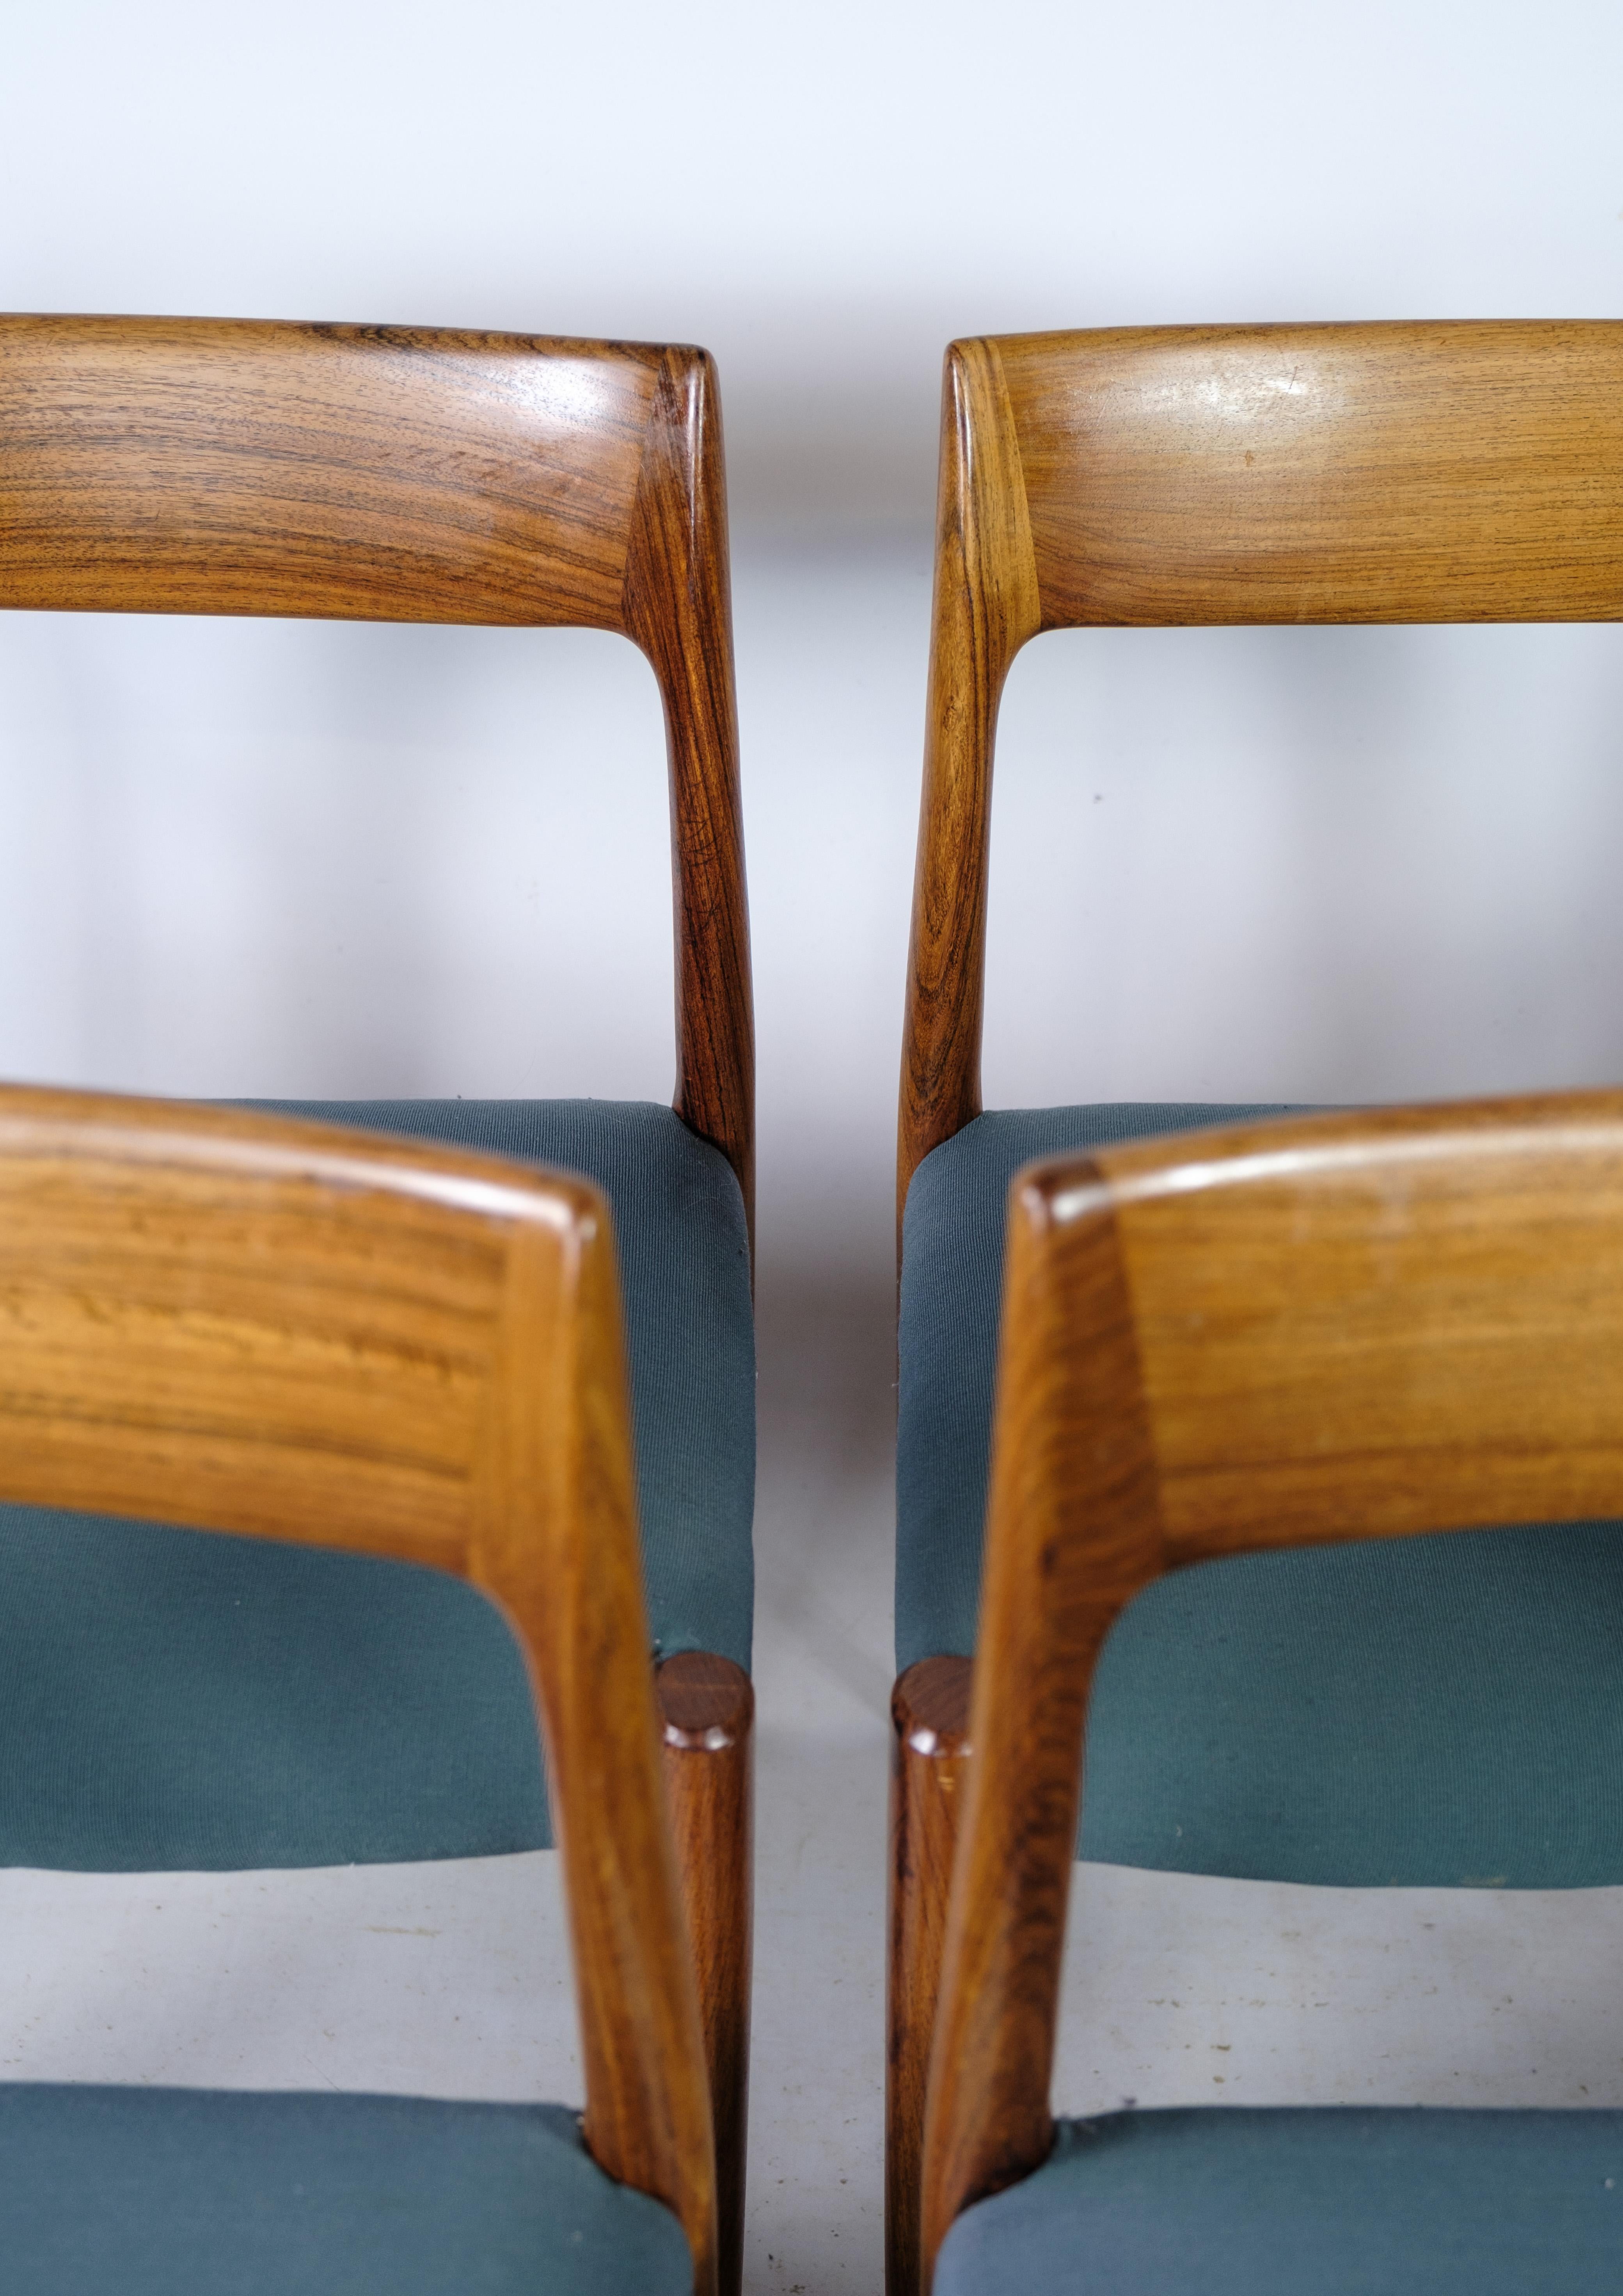 
Dieses Set aus sechs Esszimmerstühlen, bekannt als Modell 77, ist ein beeindruckendes Beispiel für dänisches Design. Entworfen von Niels Otto Møller und hergestellt von J.L. Diese Stühle, die in der Møller's Møbelfabrik in den 1960er Jahren